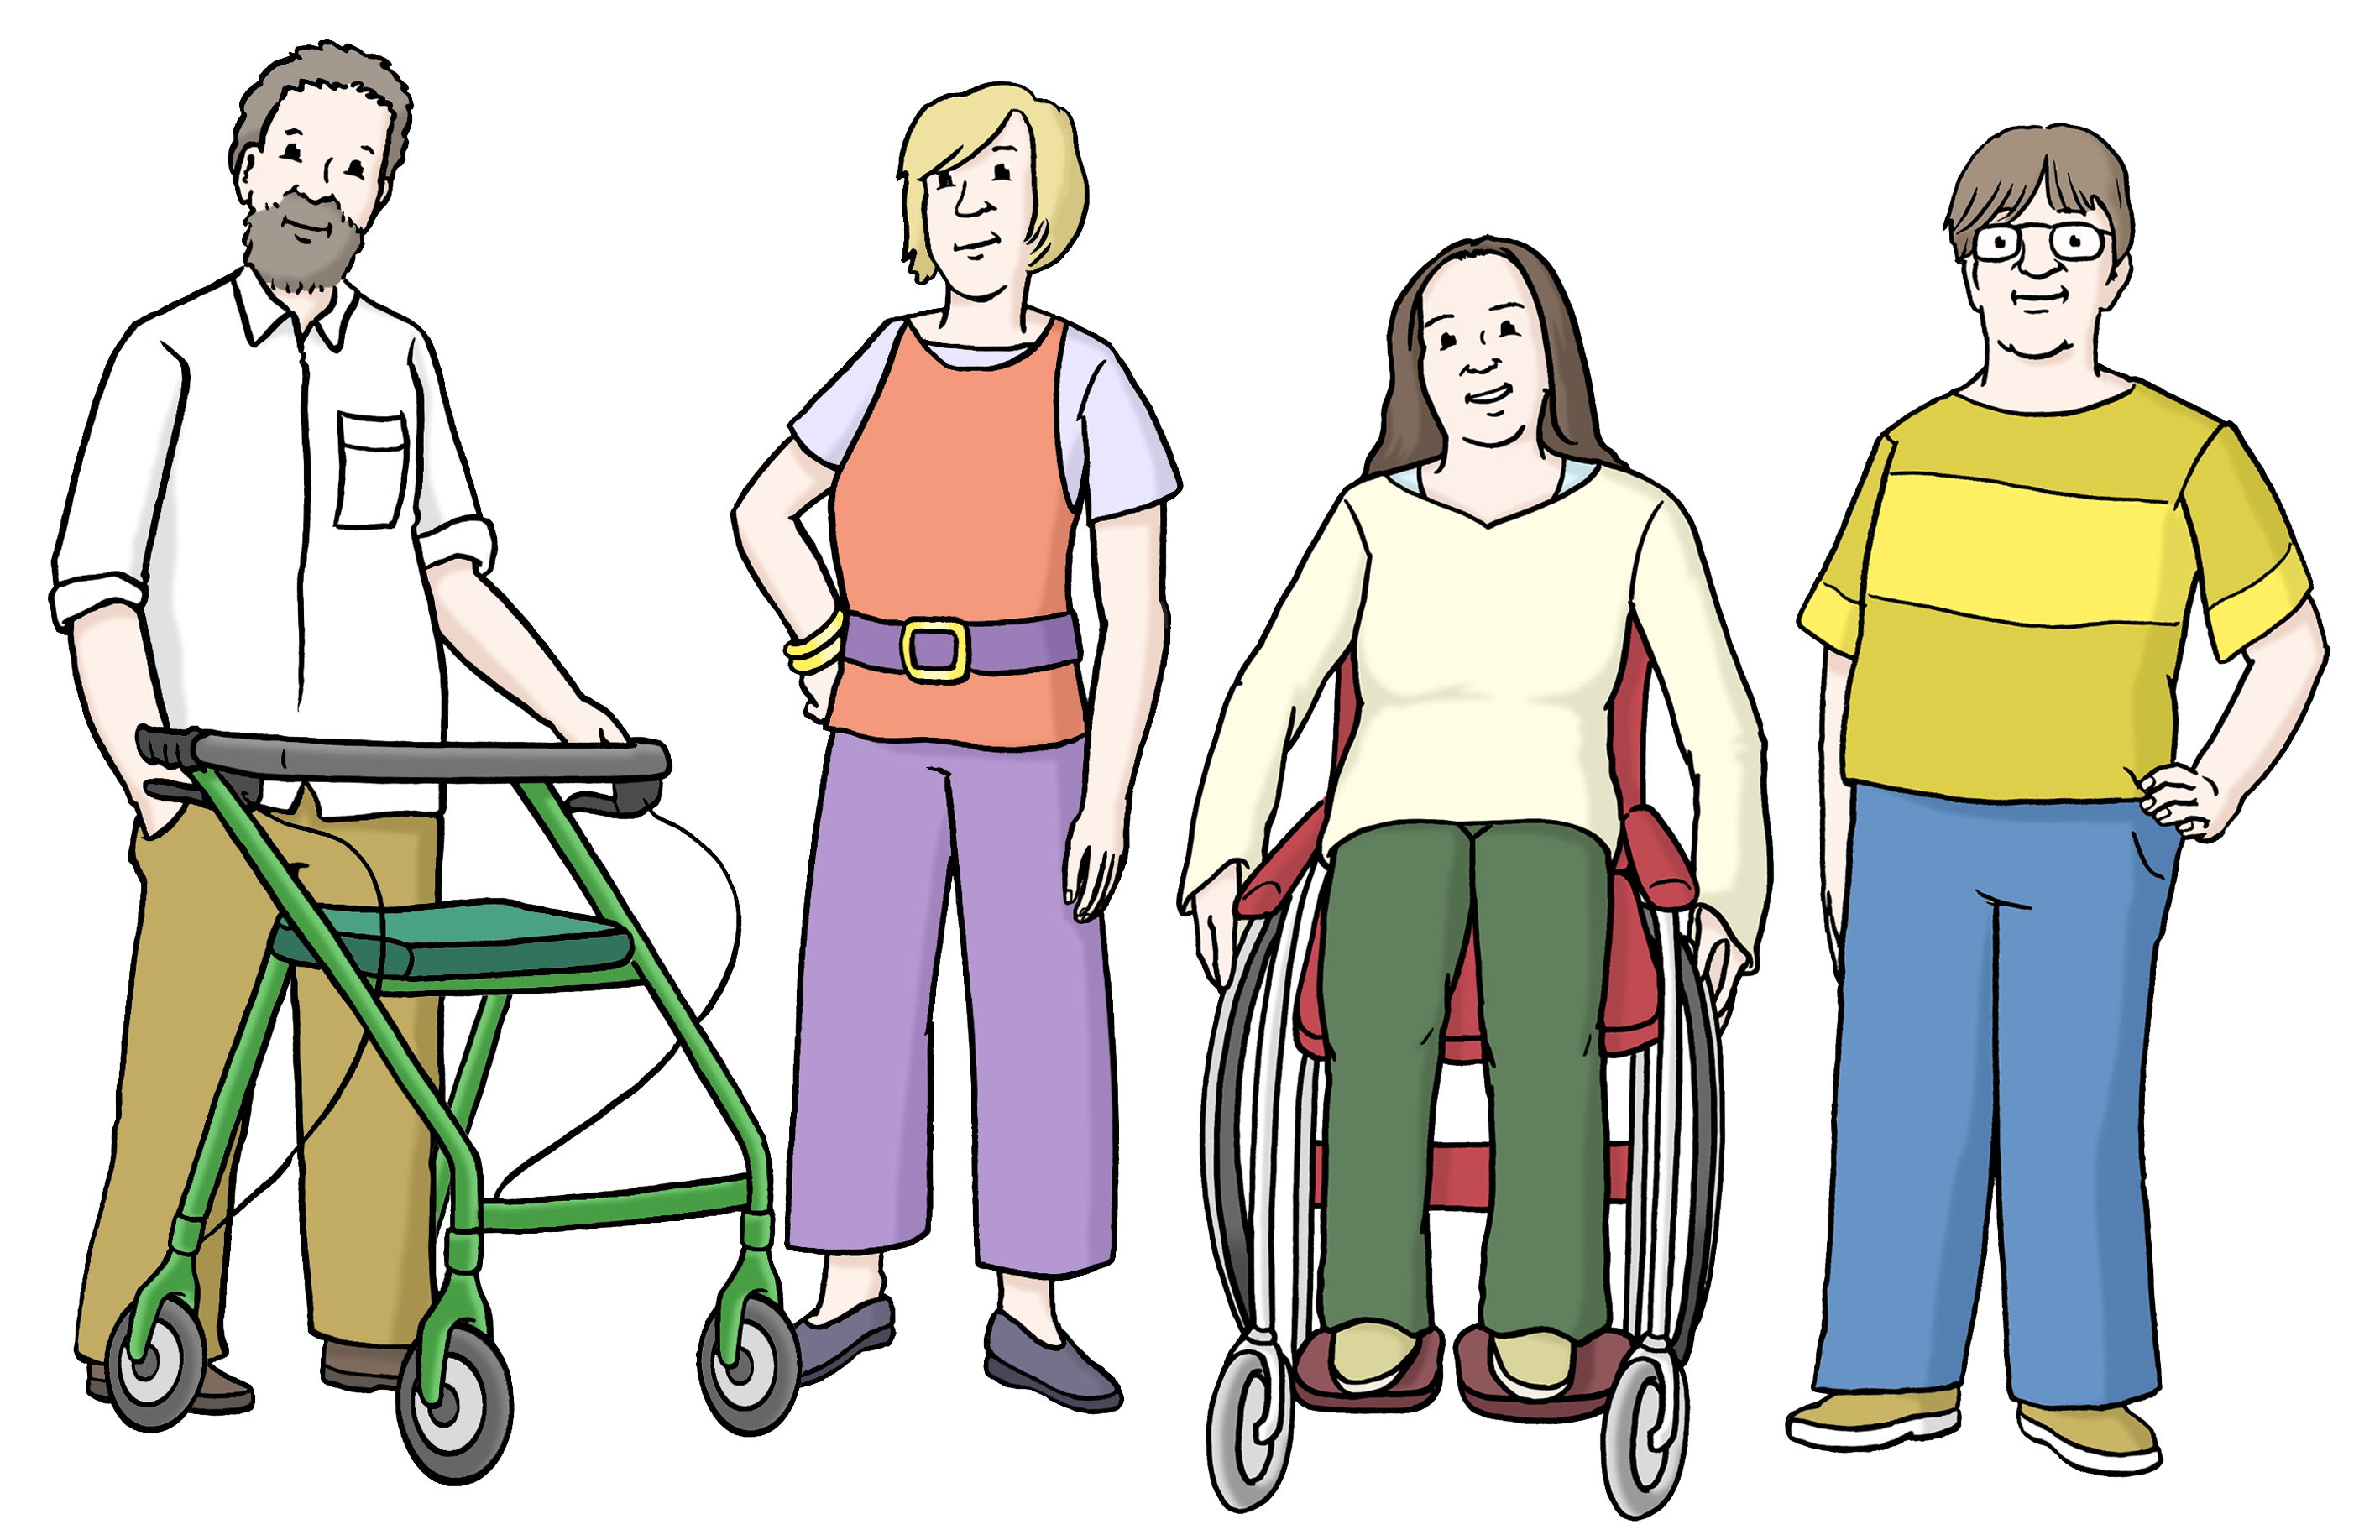 Leichte Sprache Bild: Vier Menschen, davon einer mit Rollator und eine Frau im Rollstuhl